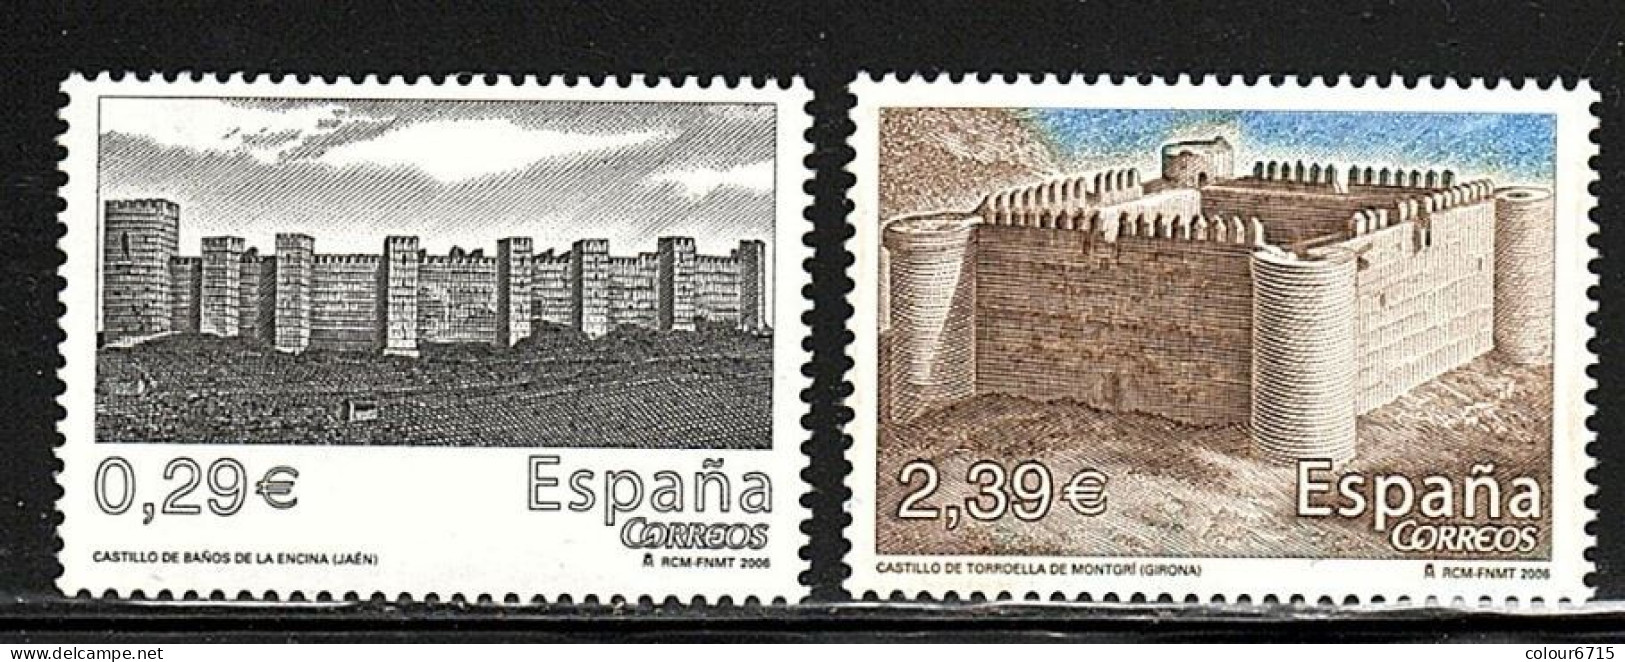 Spain 2006 Castles Stamps 2v MNH - Nuevos